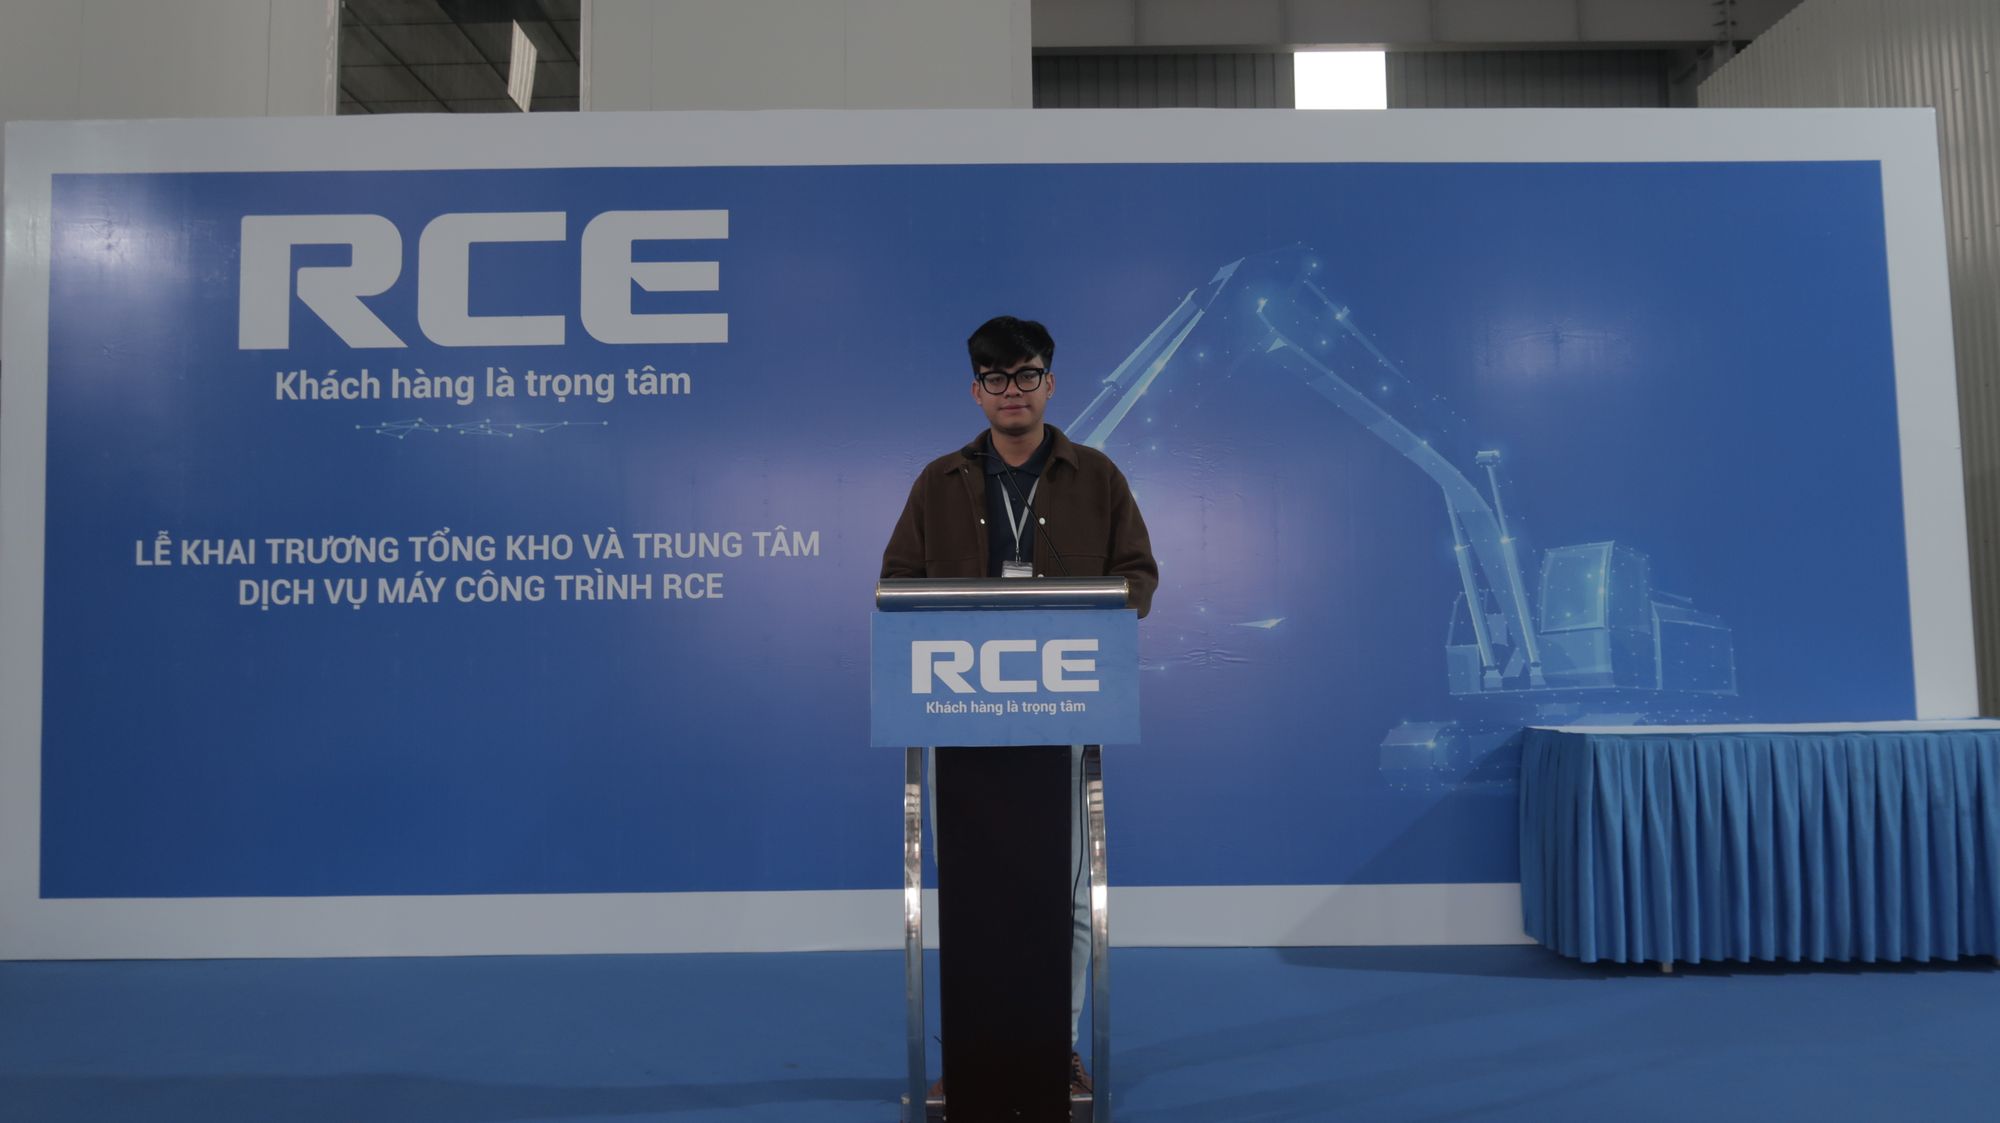 Vincent: Chàng thanh niên kỹ sư bán hàng đầy nhiệt huyết tại RCE